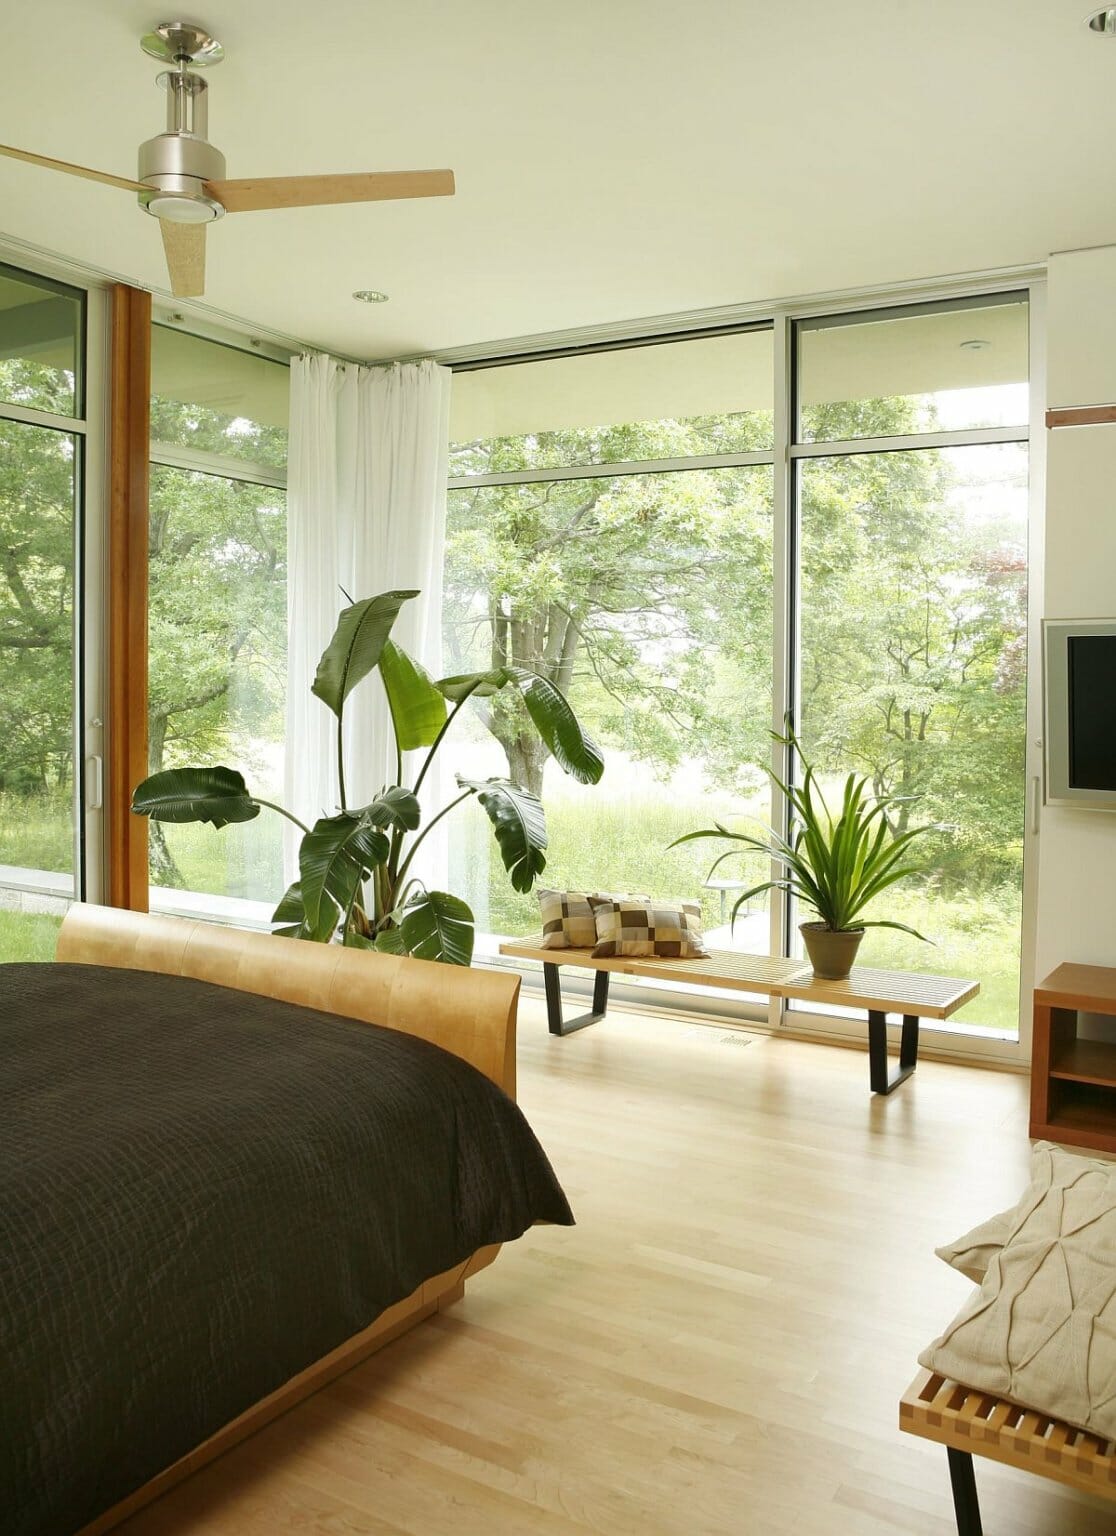 Hình ảnh phòng ngủ với giường nệm êm ái, quạt trần, cây xanh trang trí, tường kính trong suốt